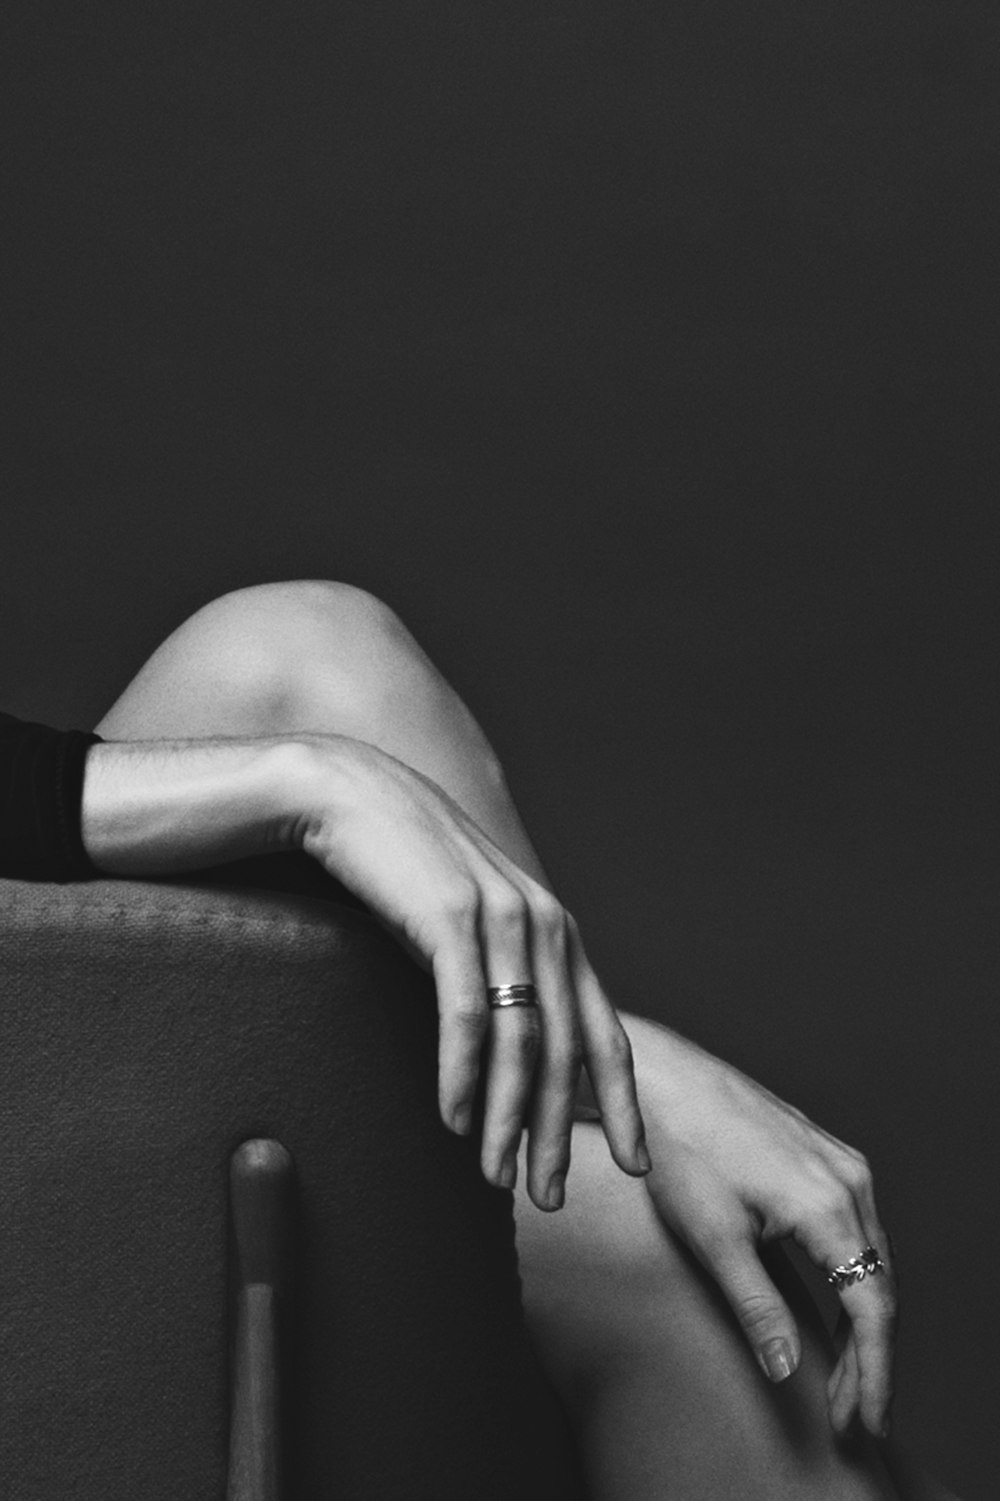 fotografia in scala di grigi di una persona seduta che indossa anelli con entrambe le mani